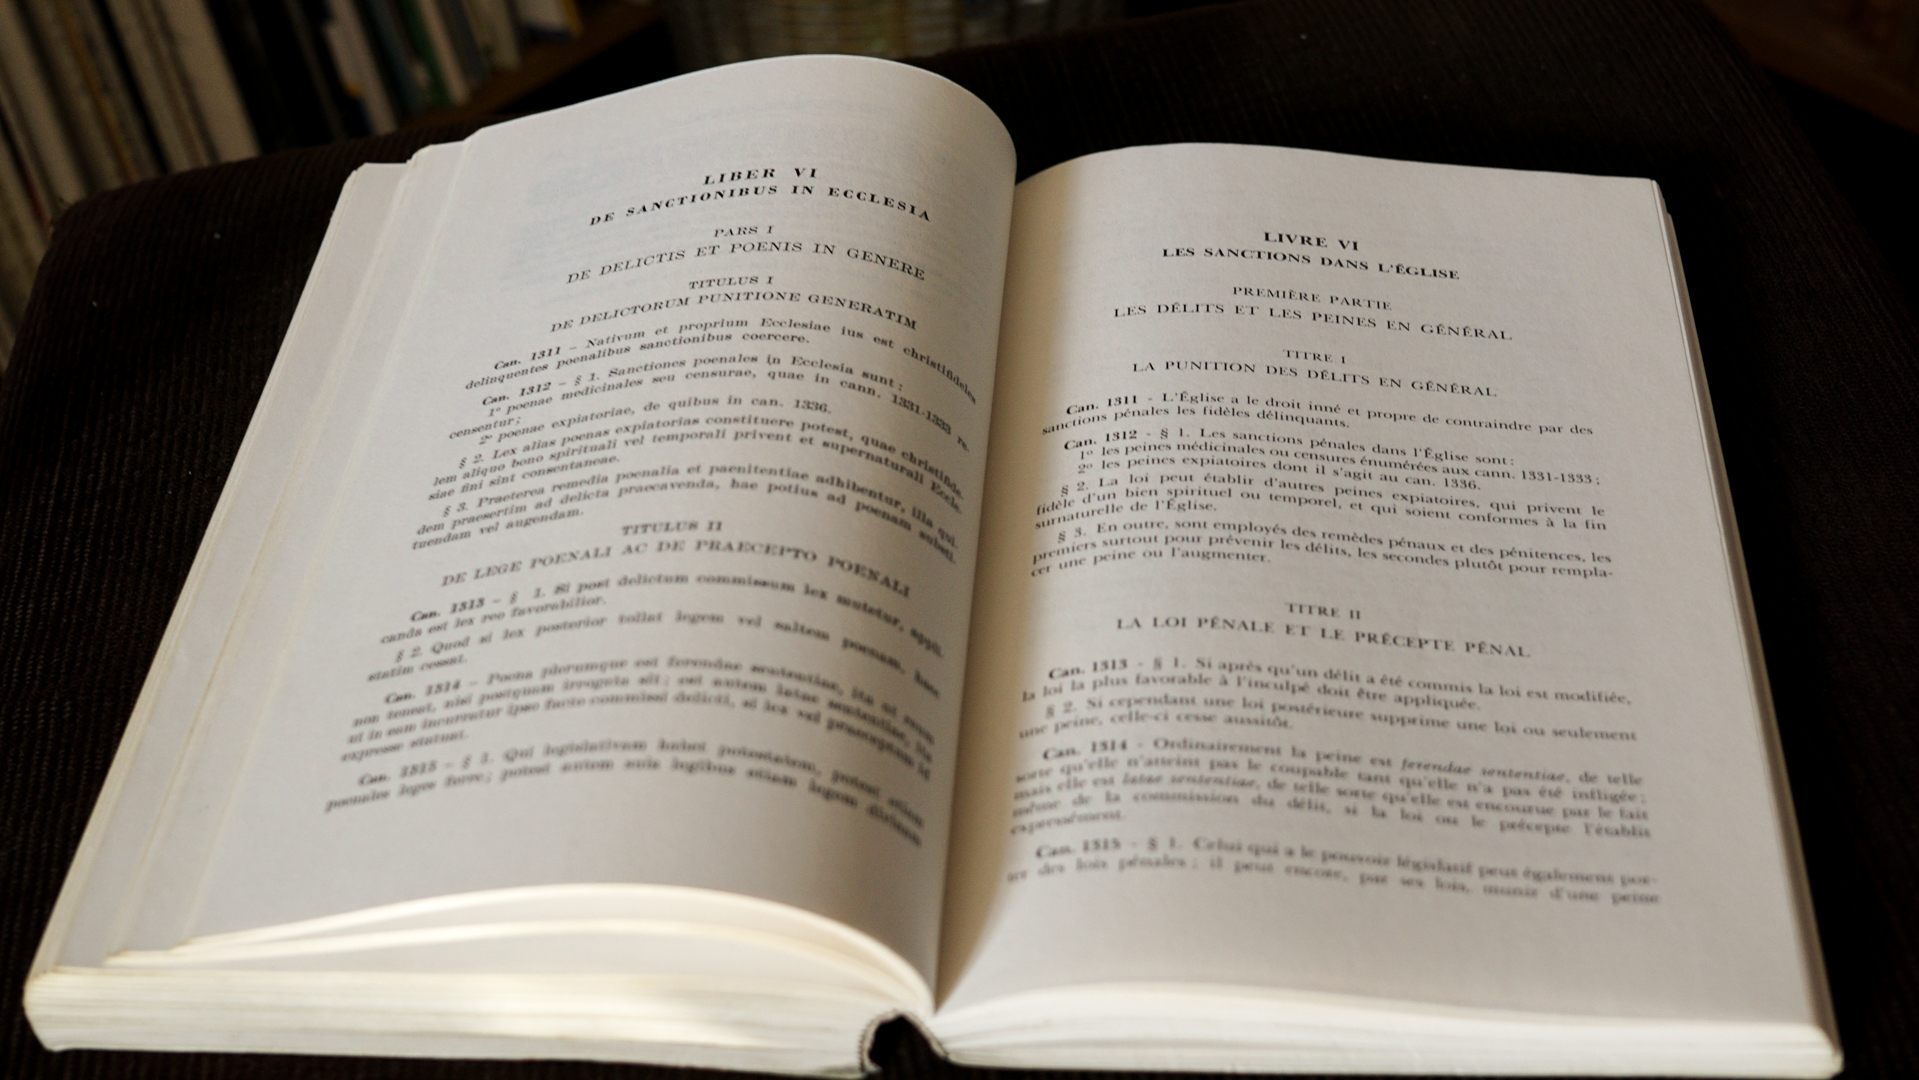 Le livre VI du Droit canon traite des sanctions dans l'Eglise | © Maurice Page 